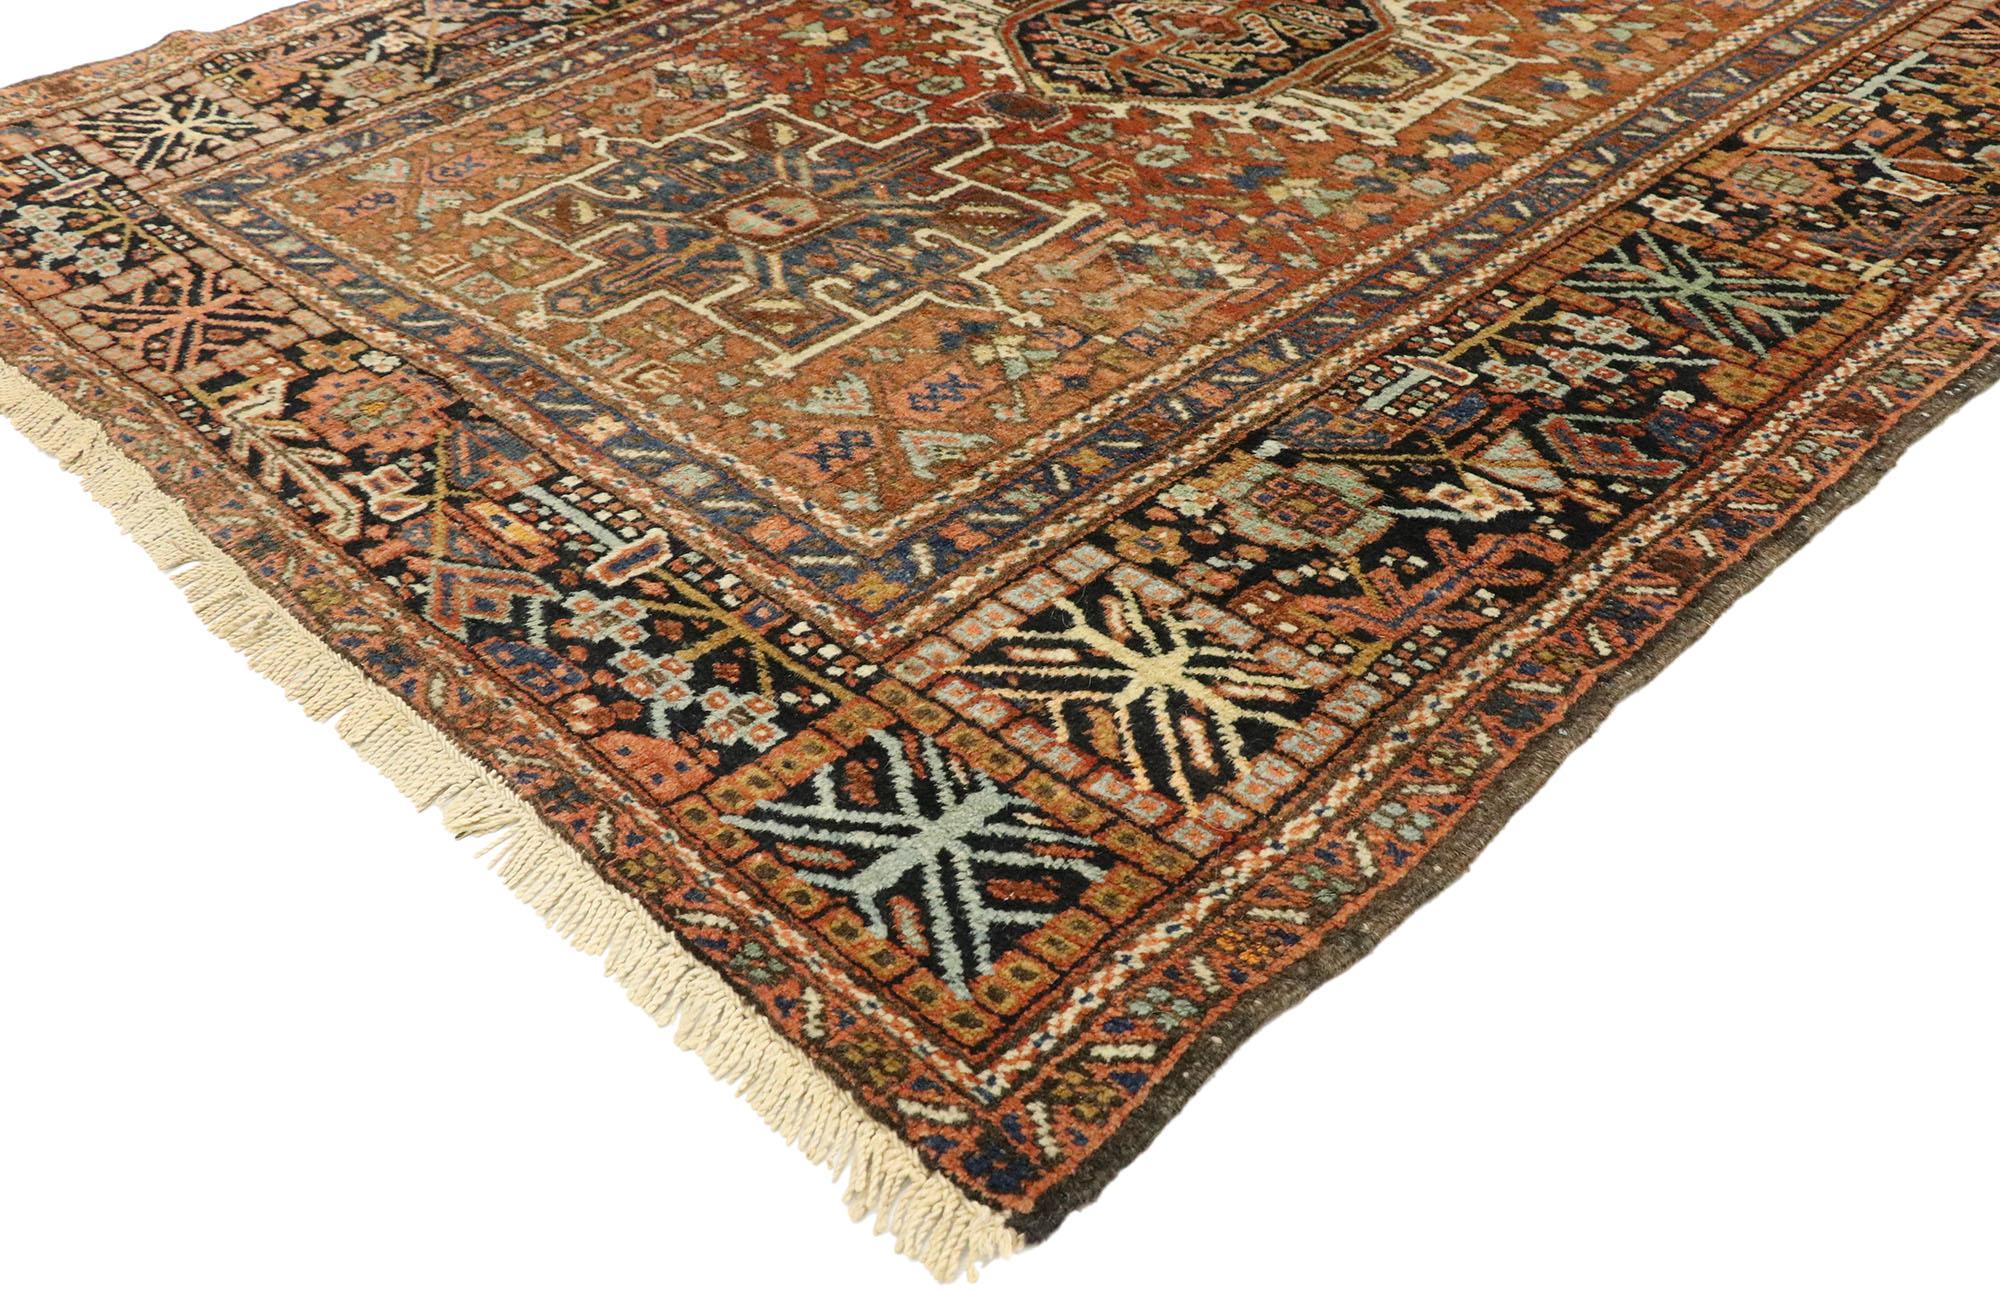 77067 Tapis persan antique Karaja Heriz de style tribal, tapis d'étude ou de bureau à domicile. Ce tapis persan ancien Karaja Heriz en laine nouée à la main présente trois médaillons aux motifs cruciformes. Le médaillon central en forme de scarabée